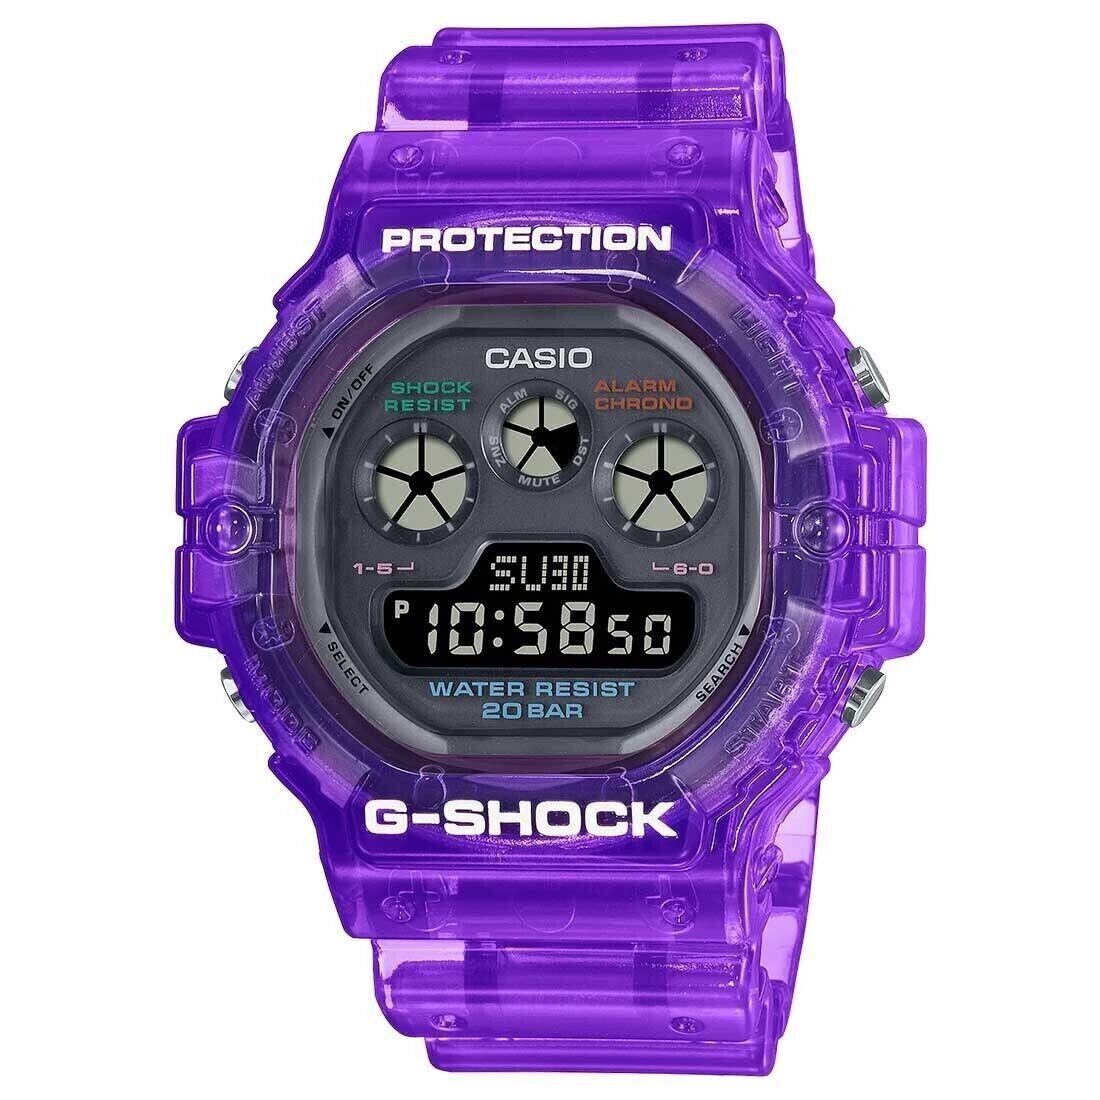 G-shock Vibrant Colours Edition Translucent Purple Watch Gshock DW-5900JT-6 - Dial: Black, Band: Purple, Bezel: Purple